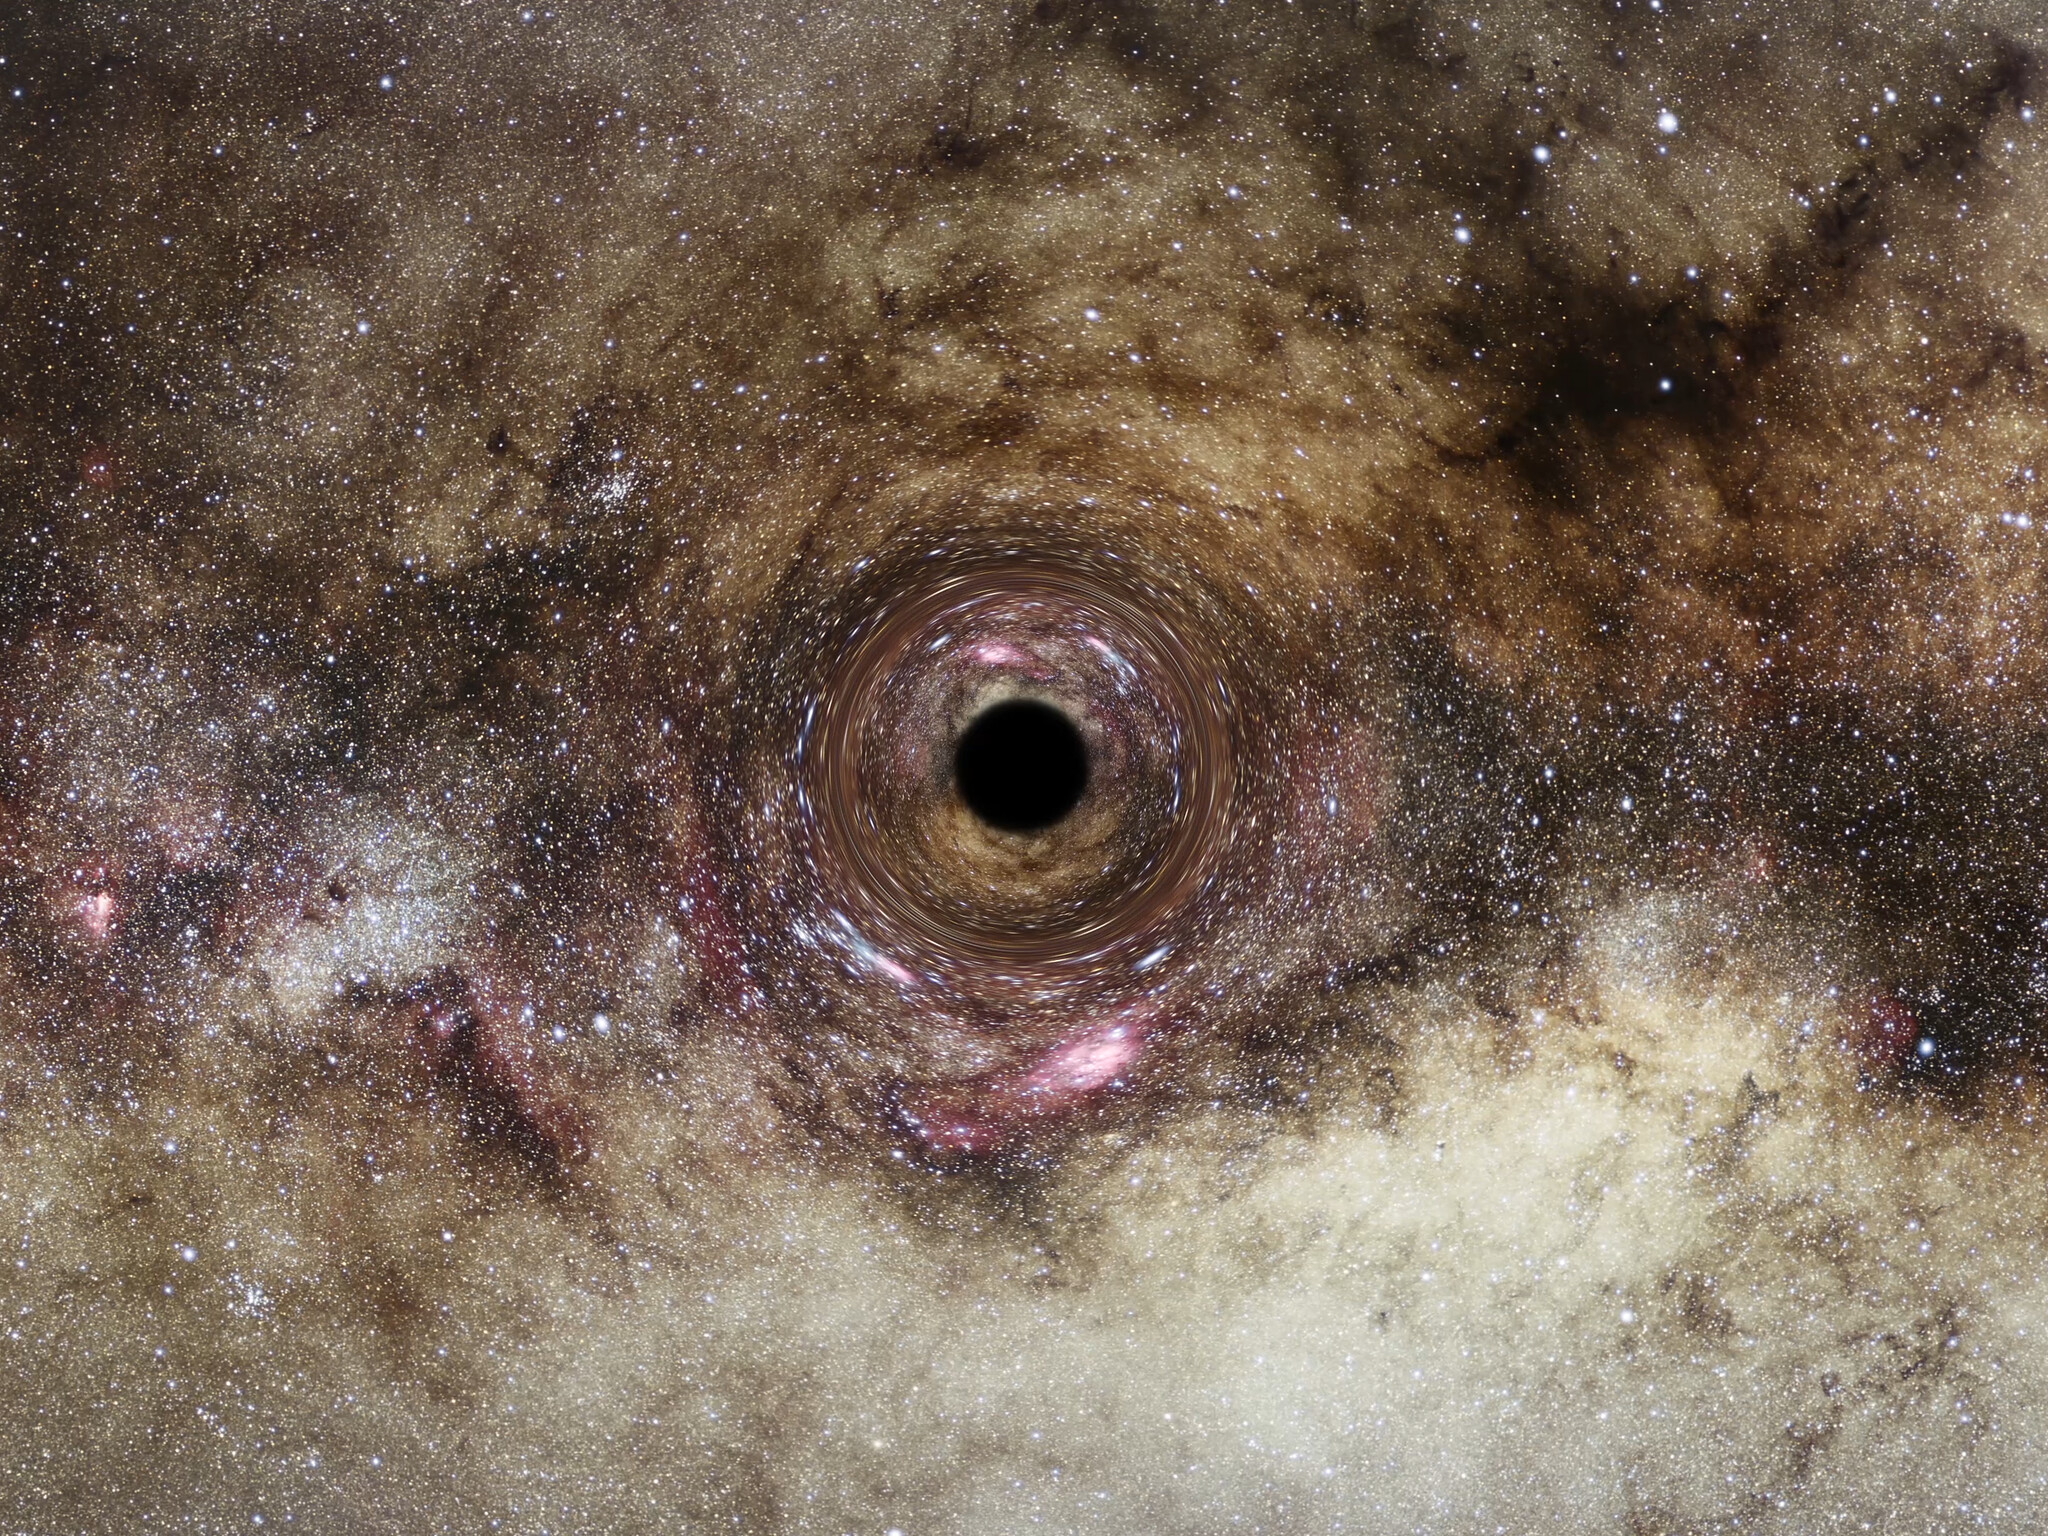 Voici une vue d'artiste d'un trou noir dérivant dans notre Galaxie, la Voie lactée. Le trou noir est le reste écrasé d'une étoile massive qui a explosé en supernova. Le noyau survivant est de plusieurs fois la masse de notre Soleil. Le trou noir piège la lumière en raison de son champ gravitationnel intense. Le trou noir déforme l'espace qui l'entoure, ce qui déforme les images d'étoiles d'arrière-plan alignées presque directement derrière lui. Cet effet de « lentille »&nbsp;gravitationnelle offre la seule preuve révélatrice de l'existence de trous noirs solitaires errant dans notre Galaxie, dont la population pourrait atteindre 100 millions. Le télescope spatial Hubble part à la recherche de ces trous noirs en recherchant la distorsion de la lumière des étoiles lorsque les trous noirs dérivent devant les étoiles de fond. © ESA, Hubble, Digitized Sky Survey, Nick Risinger (skysurvey.org), N. Bartmann